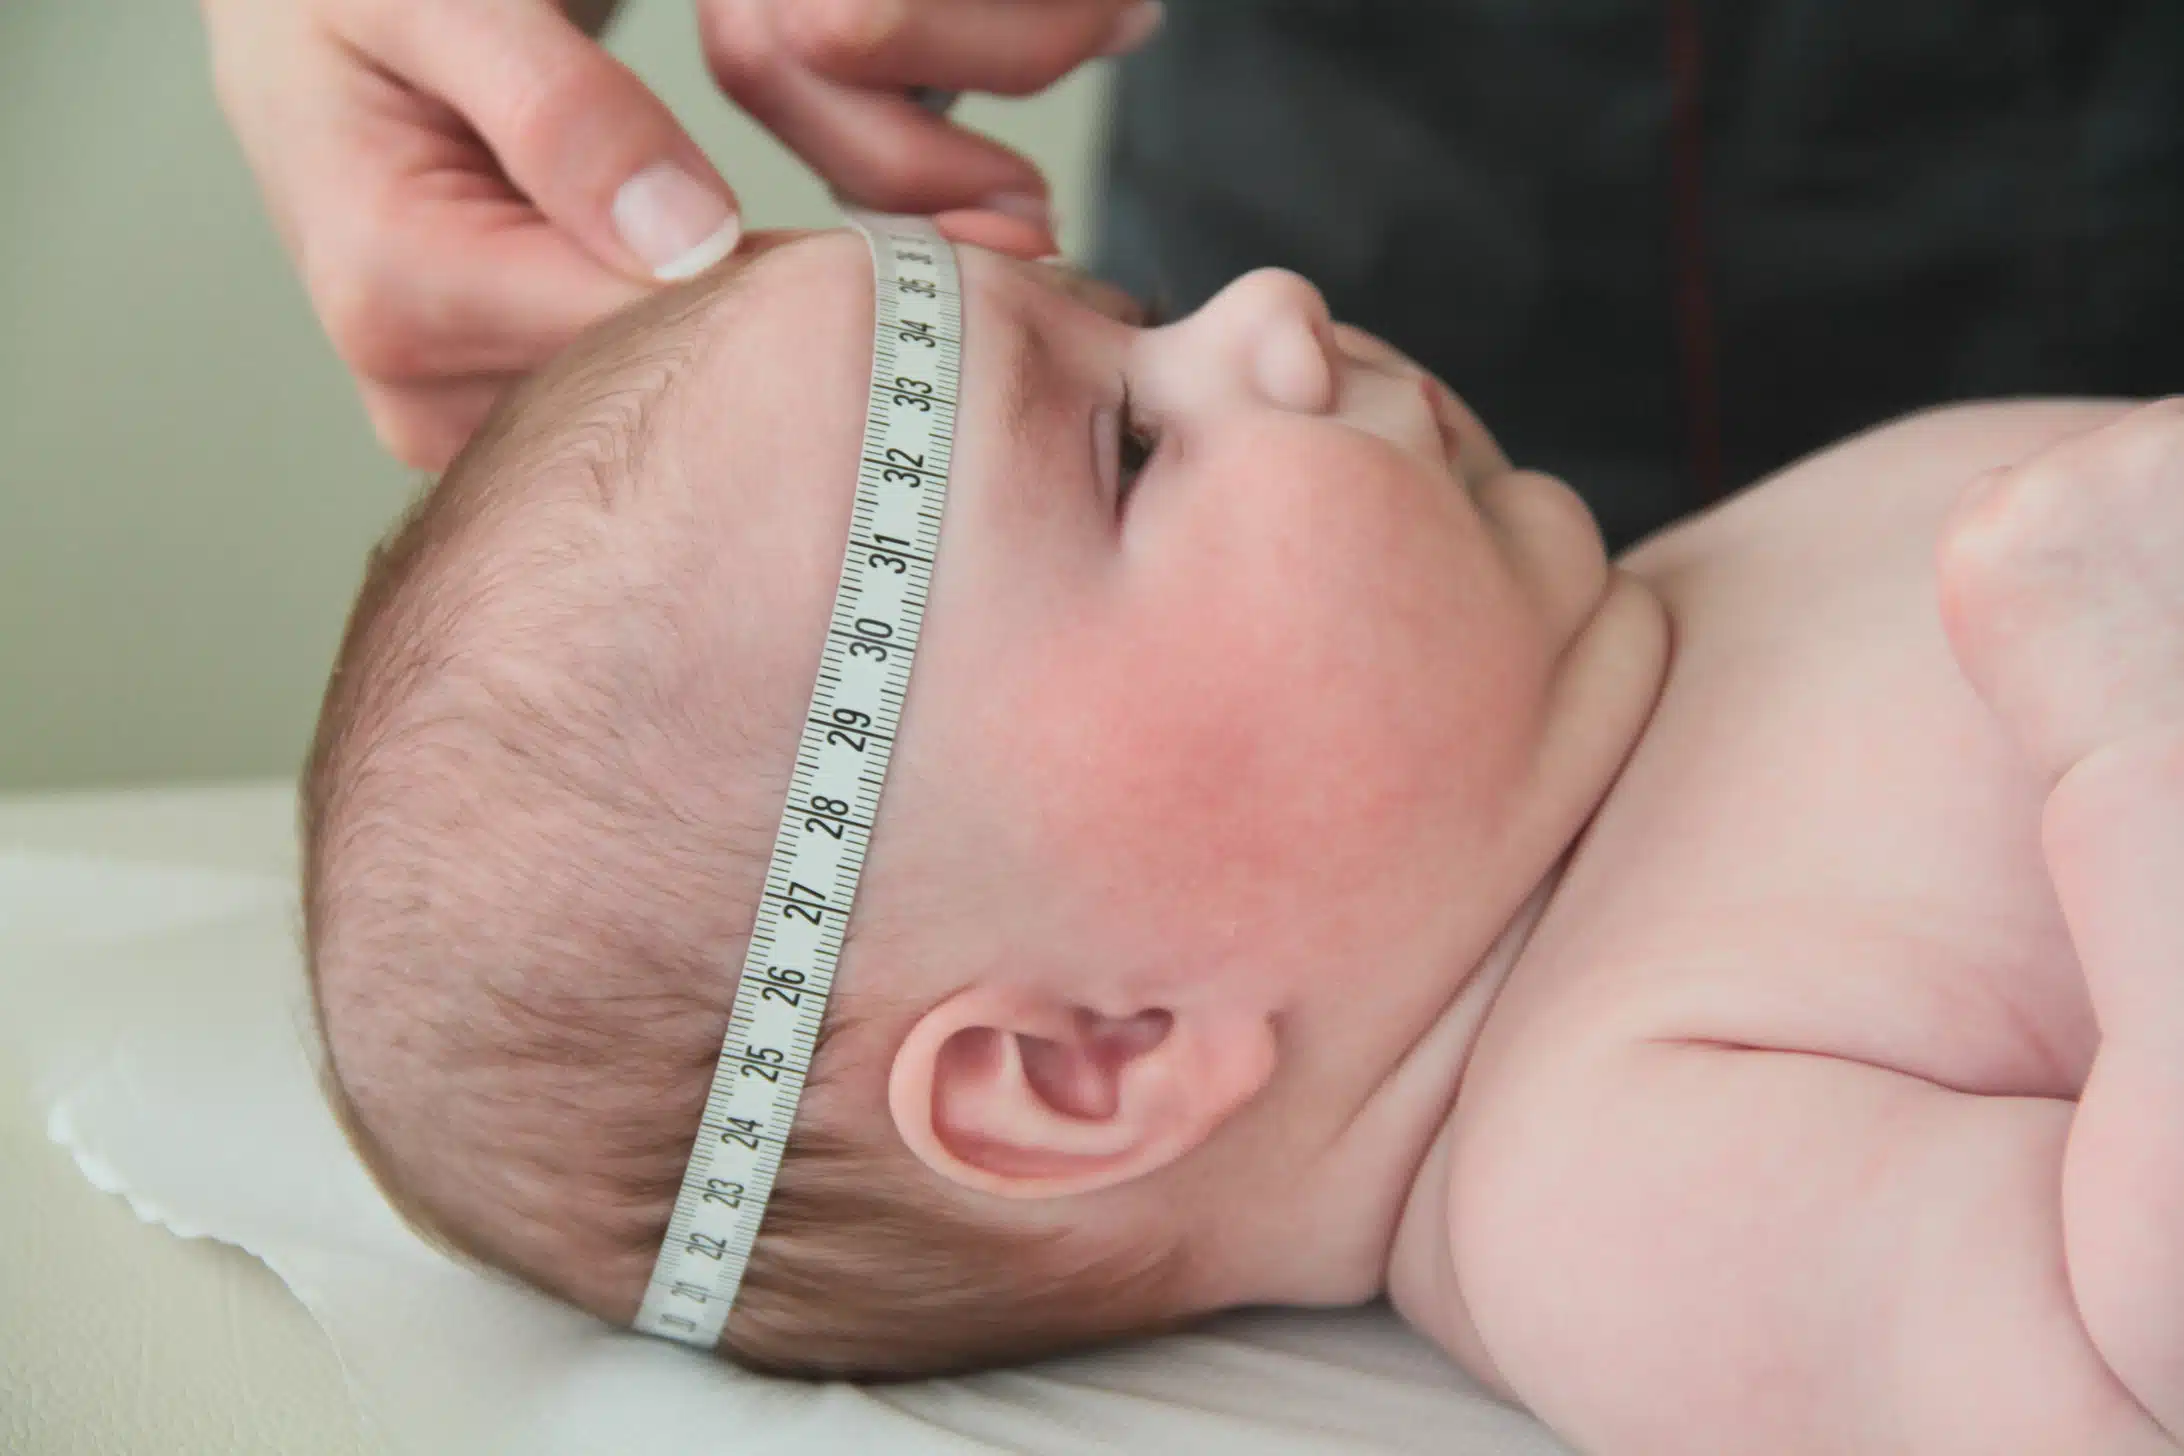 Comprendre la courbe de poids du bébé allaité un indicateur essentiel de sa santé